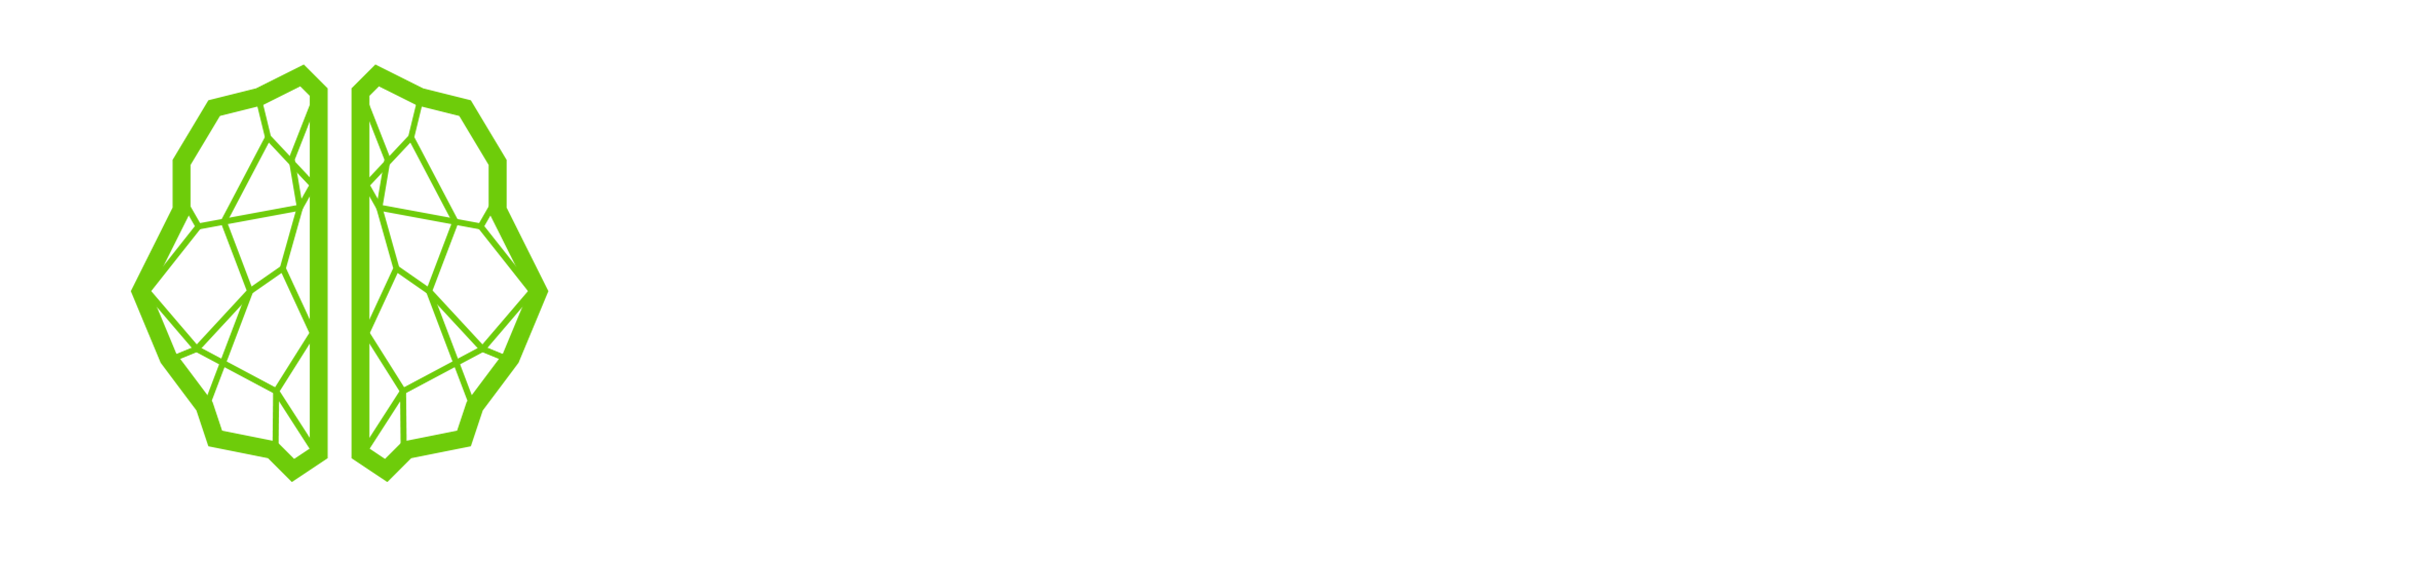 Hemisphere Education logo